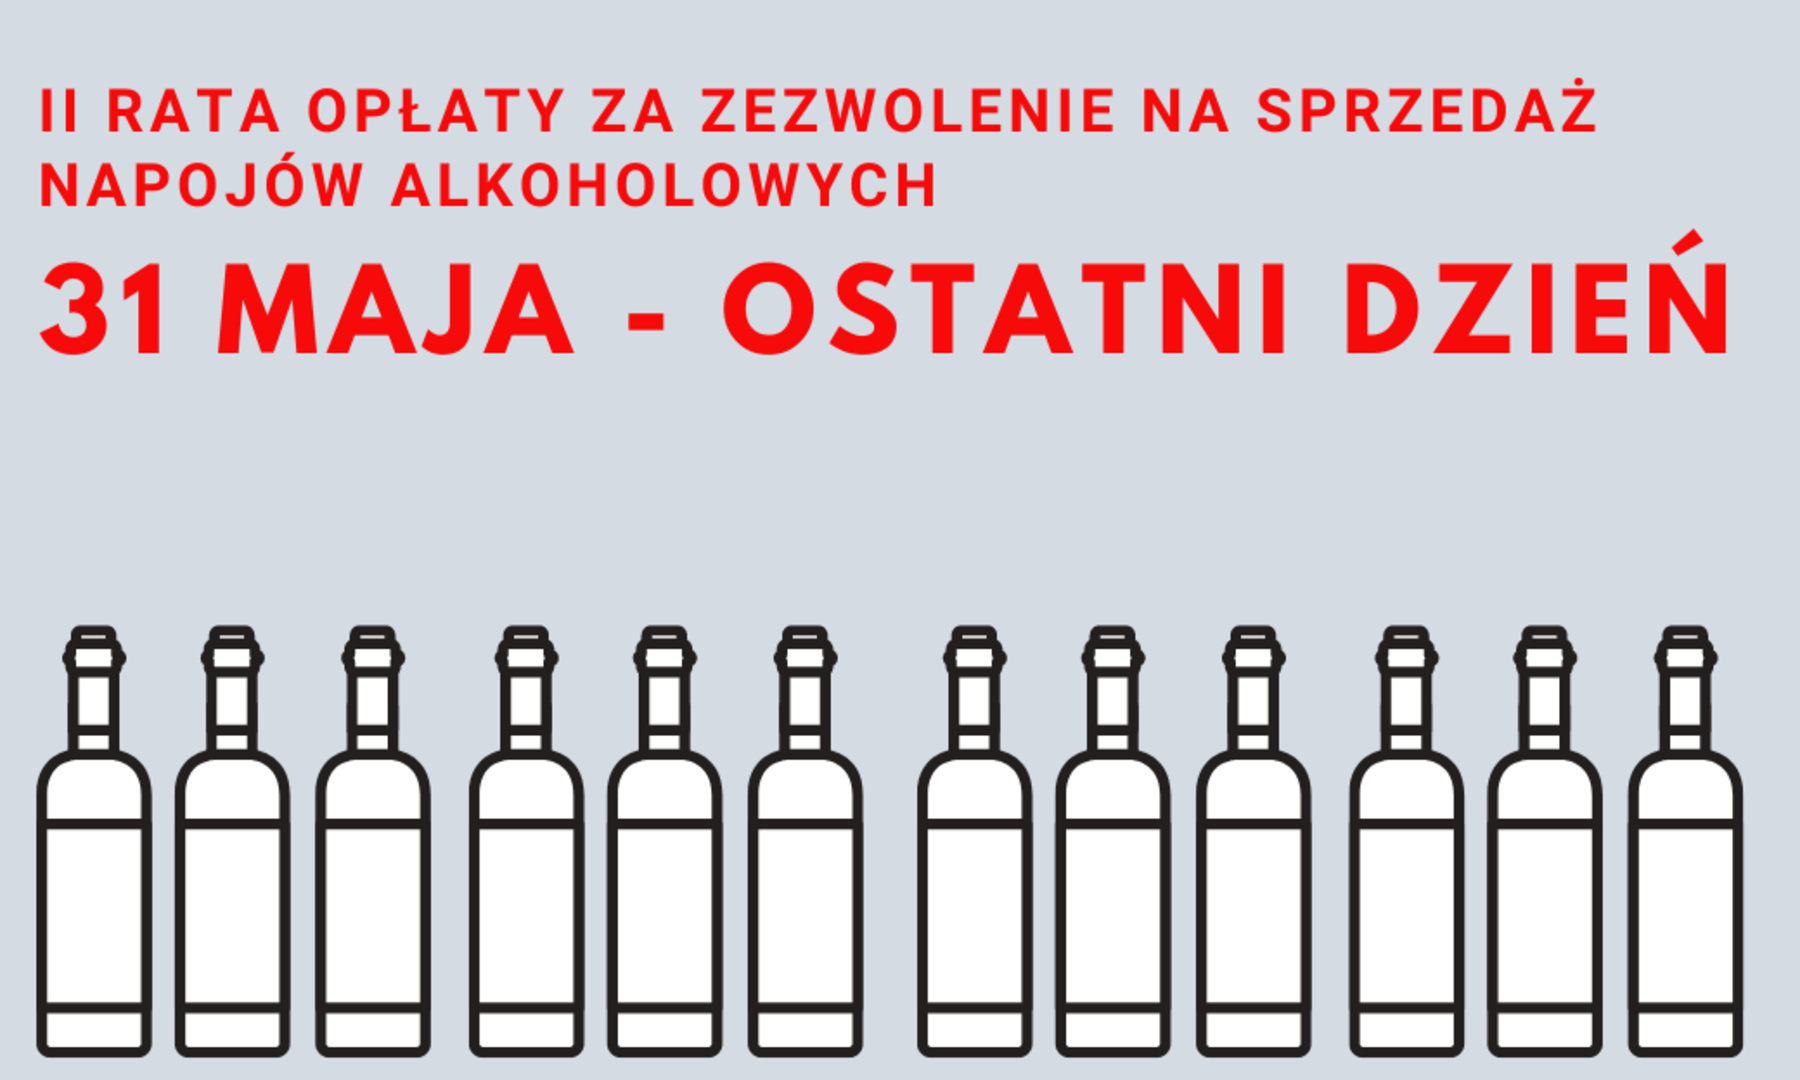 grafika z butelkami i napisem - II rata opłaty za zezwolenie na sprzedaż napojów alkoholowych, 31 maja - ostatni dzień